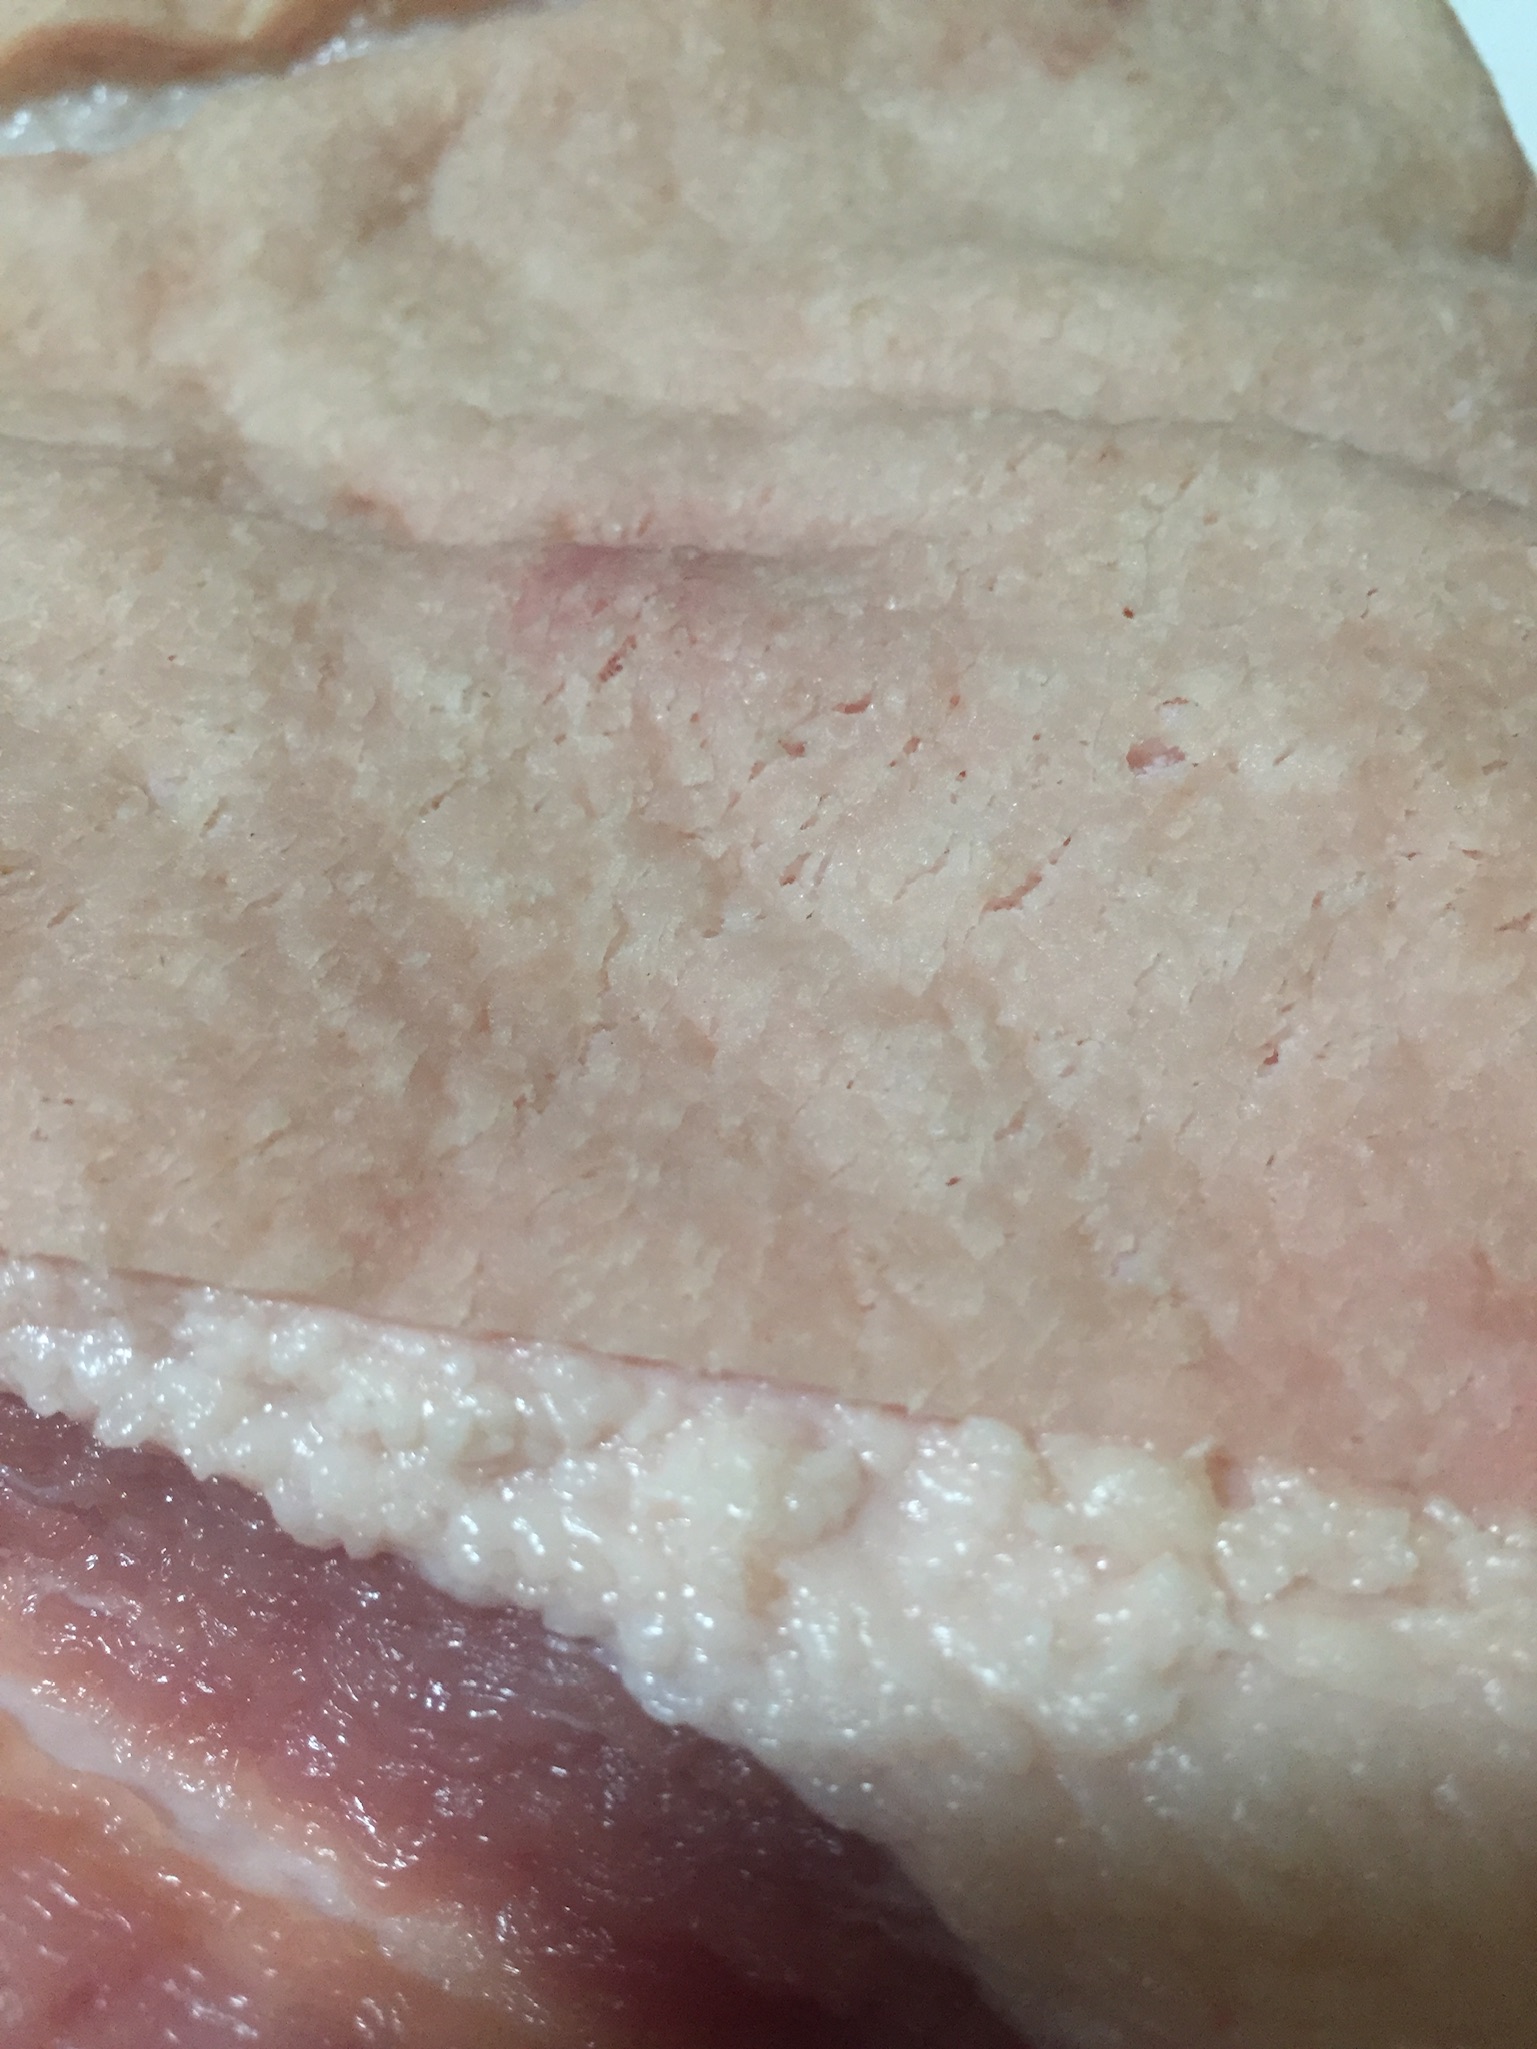 Punctured pork skin